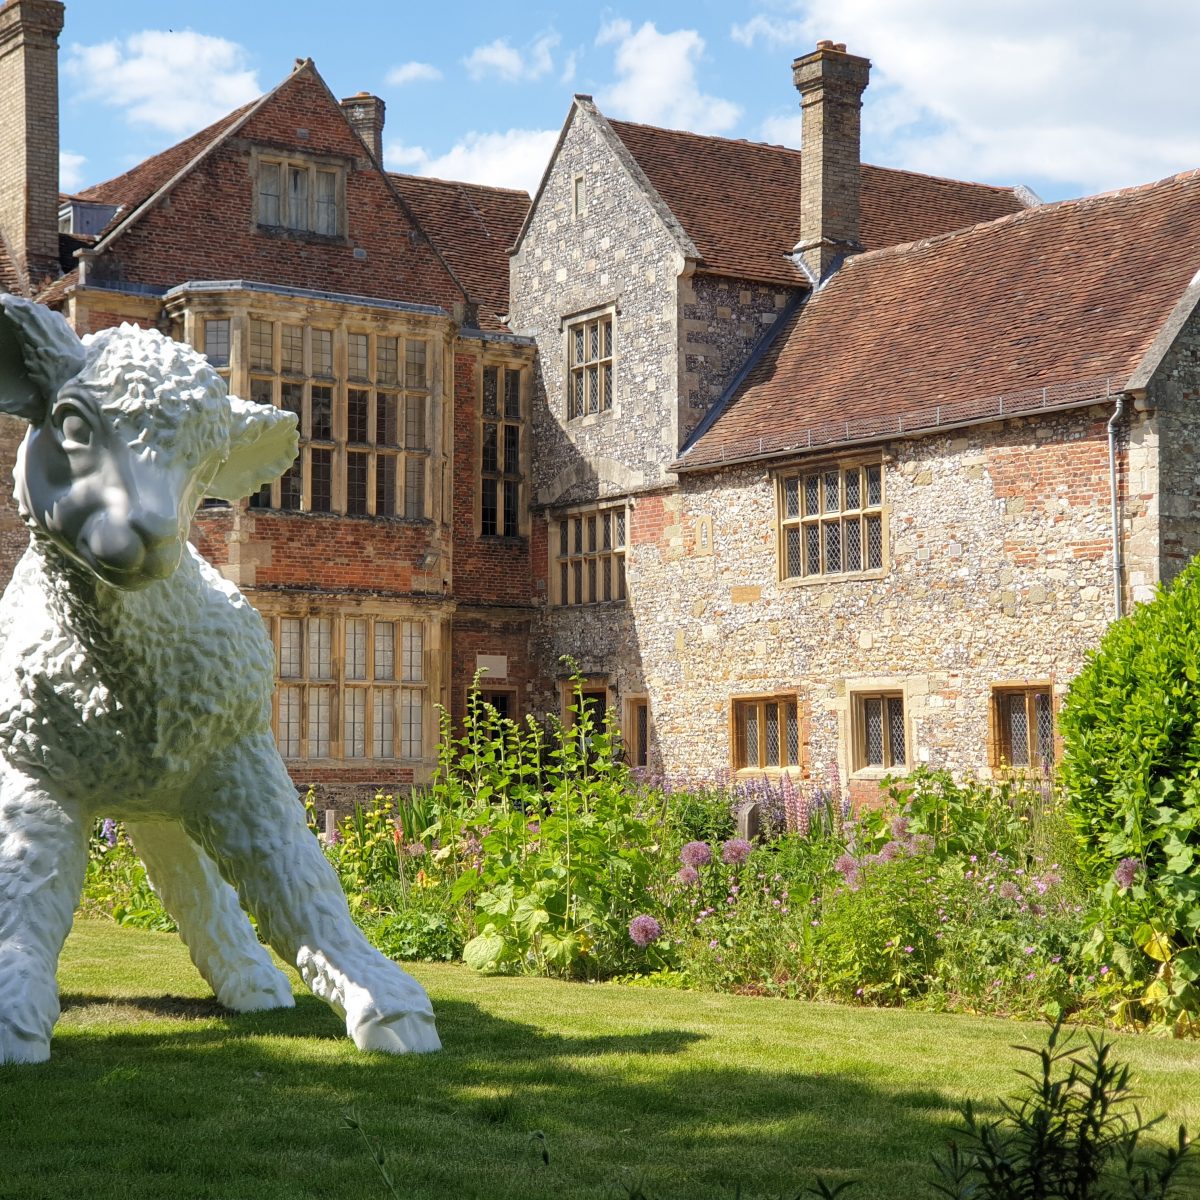 12. Lamb at The King's House, Salisbury